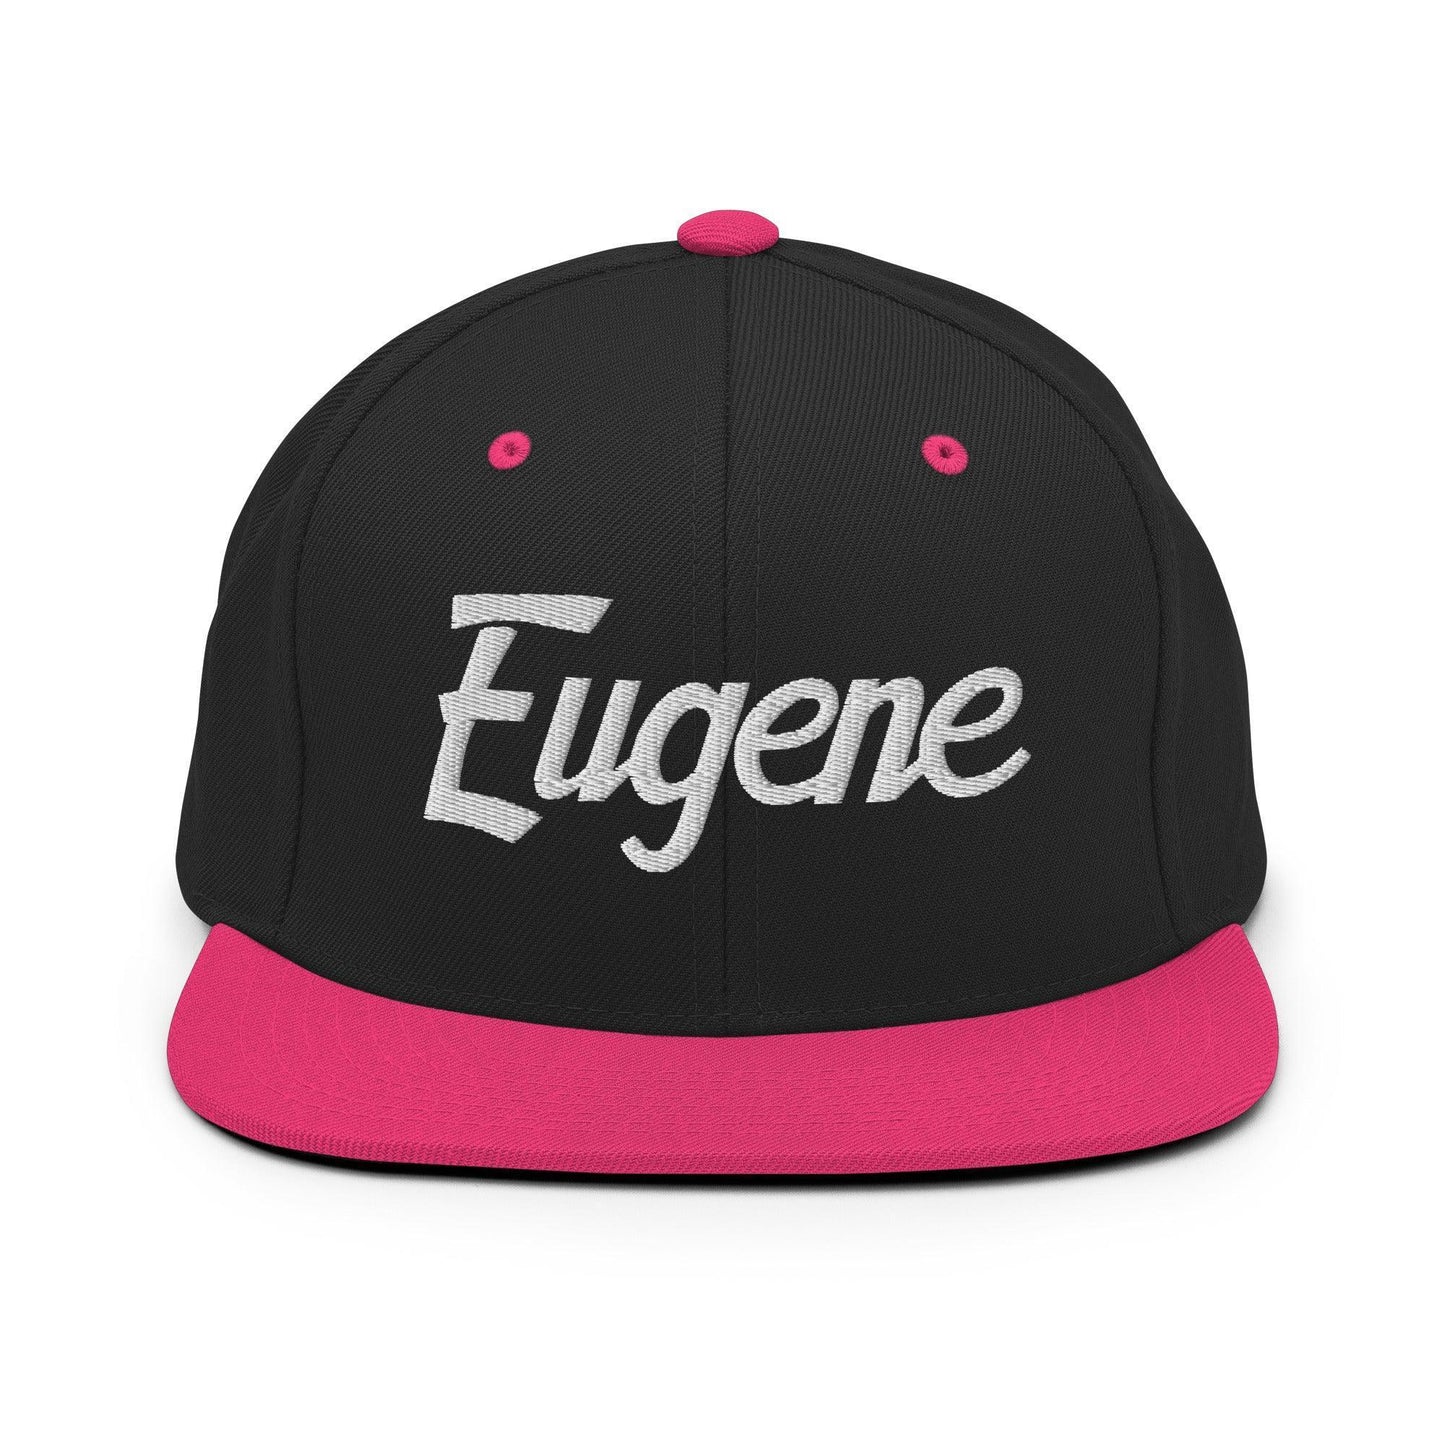 Eugene Script Snapback Hat Black Neon Pink